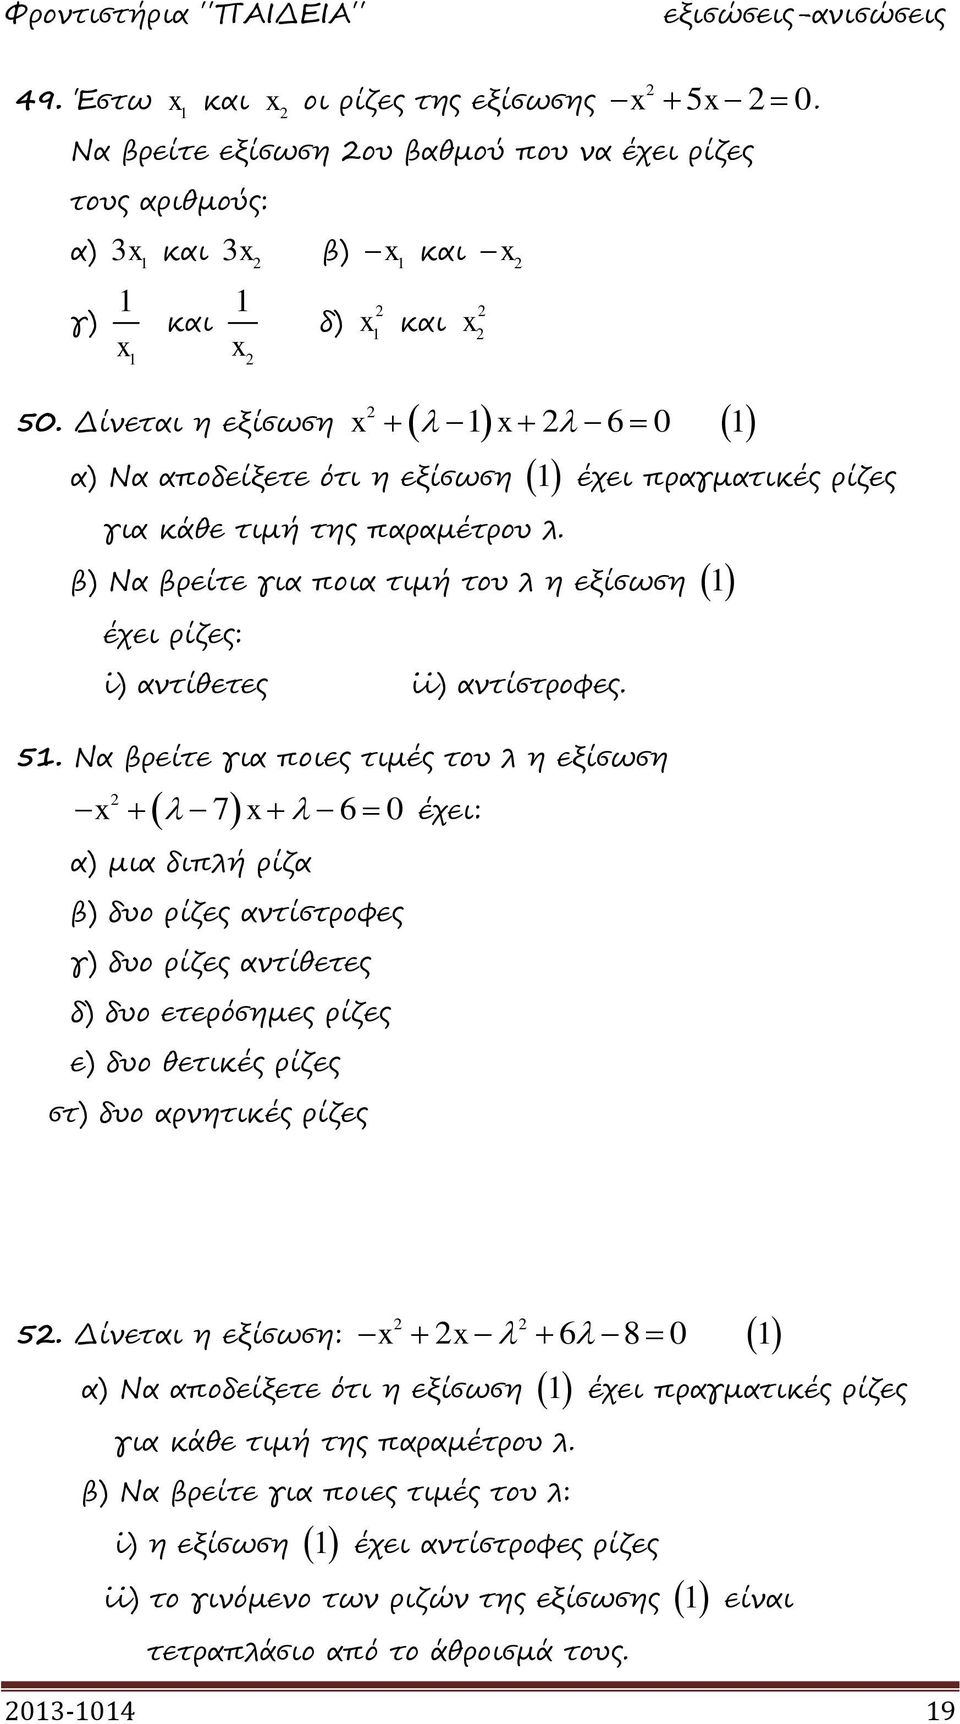 Να βρείτε για ποιες τιμές του λ η εξίσωση 7 6 0 έχει: α) μια διπλή ρίζα β) δυο ρίζες αντίστροφες γ) δυο ρίζες αντίθετες δ) δυο ετερόσημες ρίζες ε) δυο θετικές ρίζες στ) δυο αρνητικές ρίζες 5.